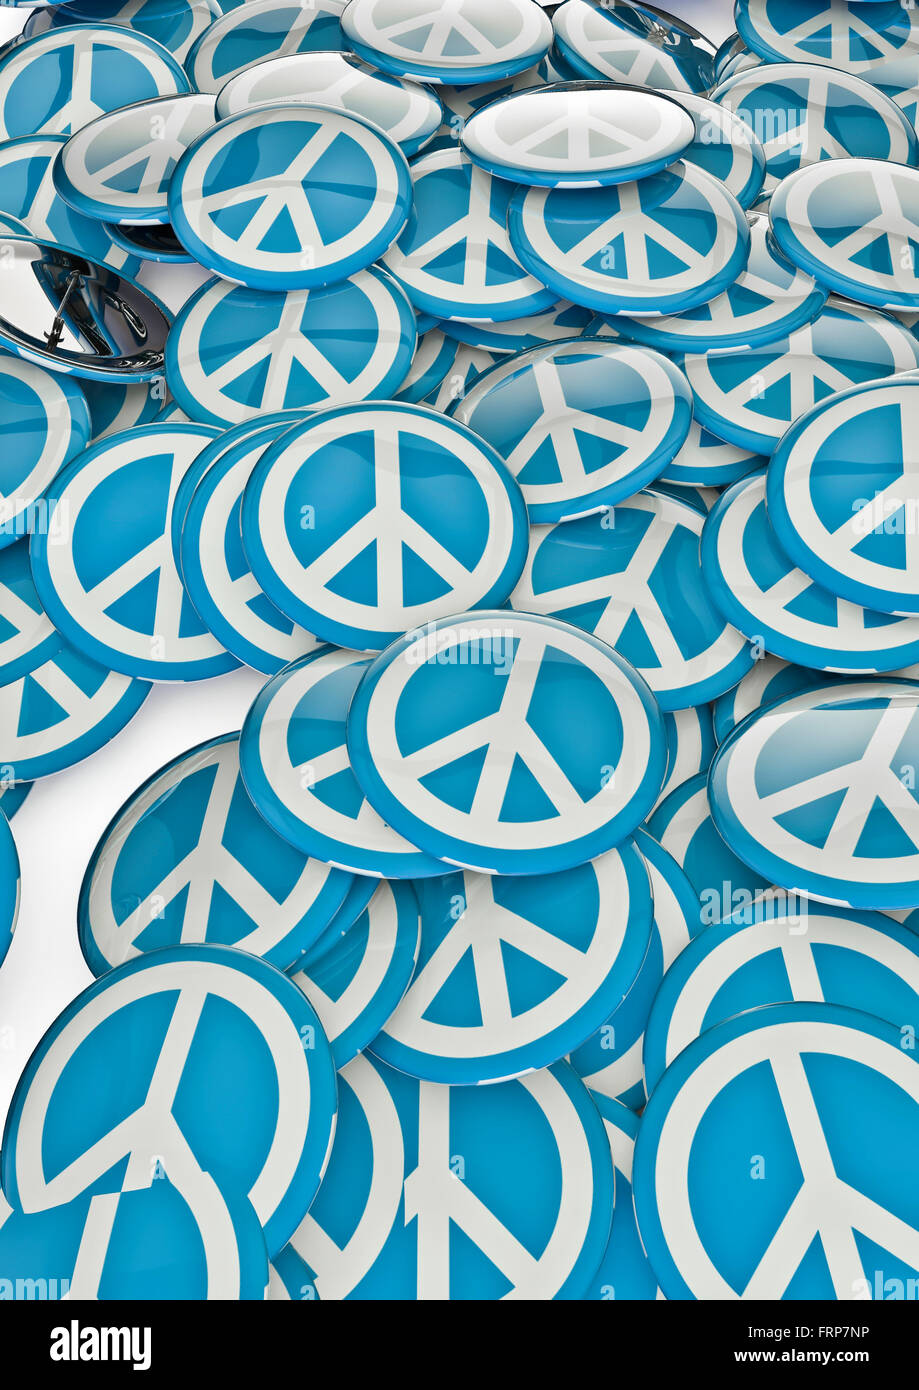 Frieden-Abzeichen / 3D-Render metallische Abzeichen mit Friedenssymbol Stockfoto